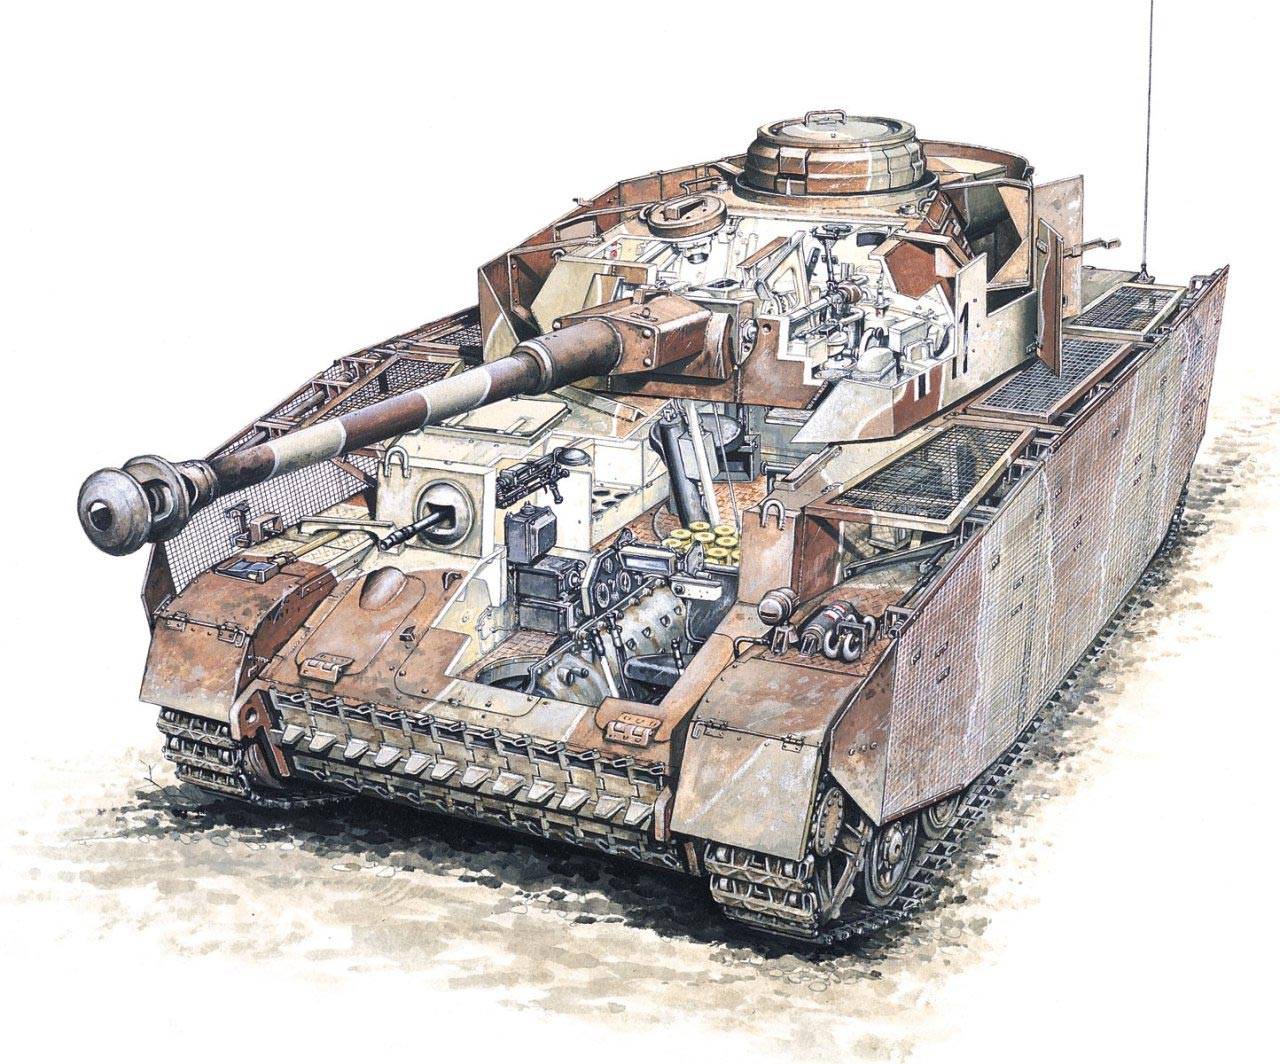 Pz.kpfw iv немецкий средний танк